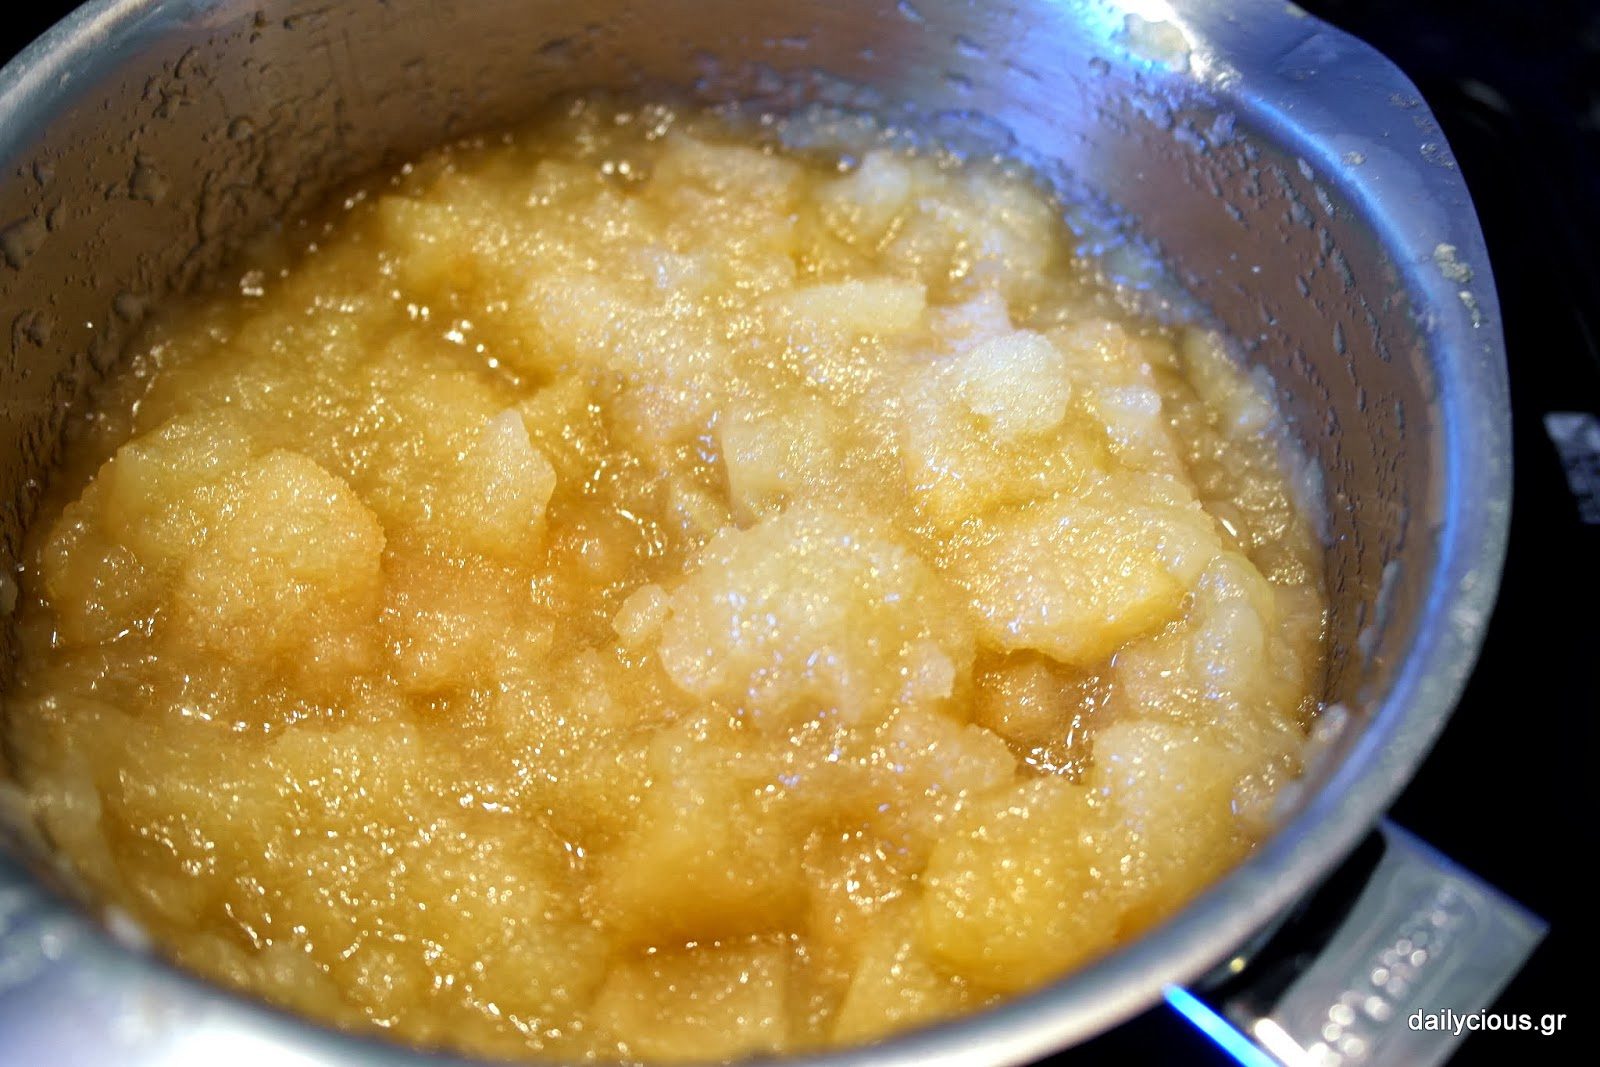 Ετοιμάζω μαρμελάδα μήλο χωρίς ζάχαρη (apple butter)